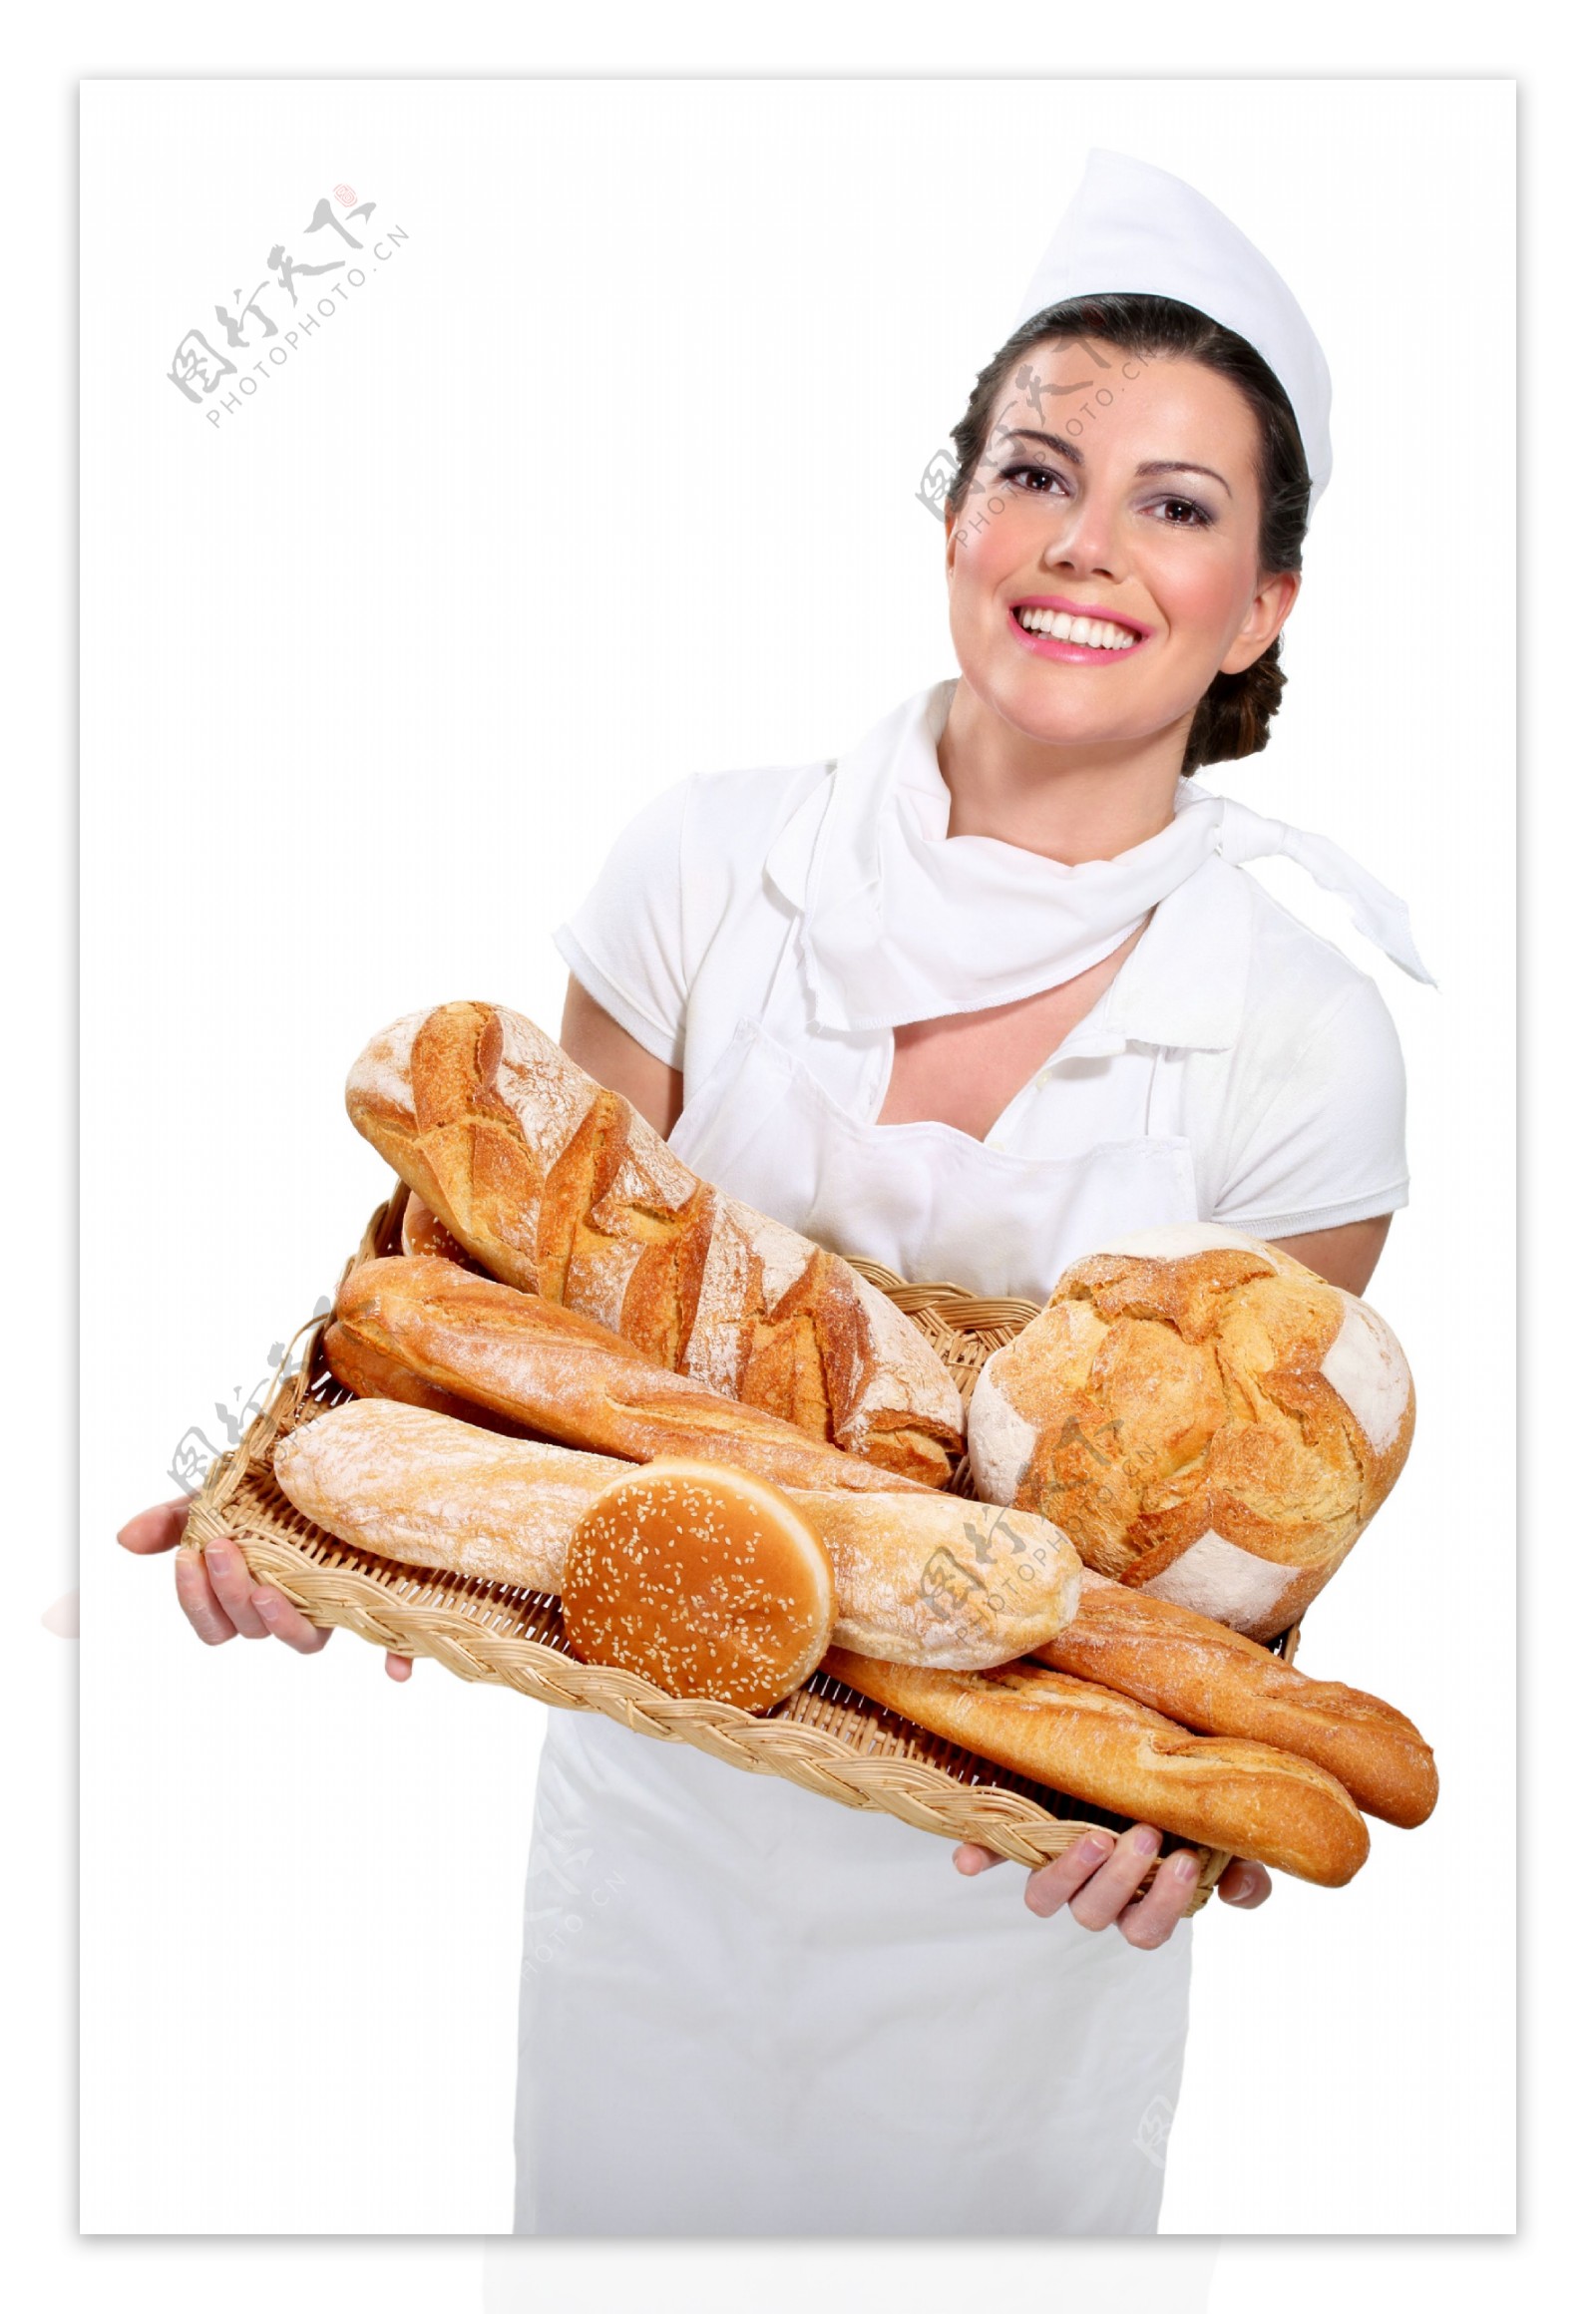 抱着面包的女人图片